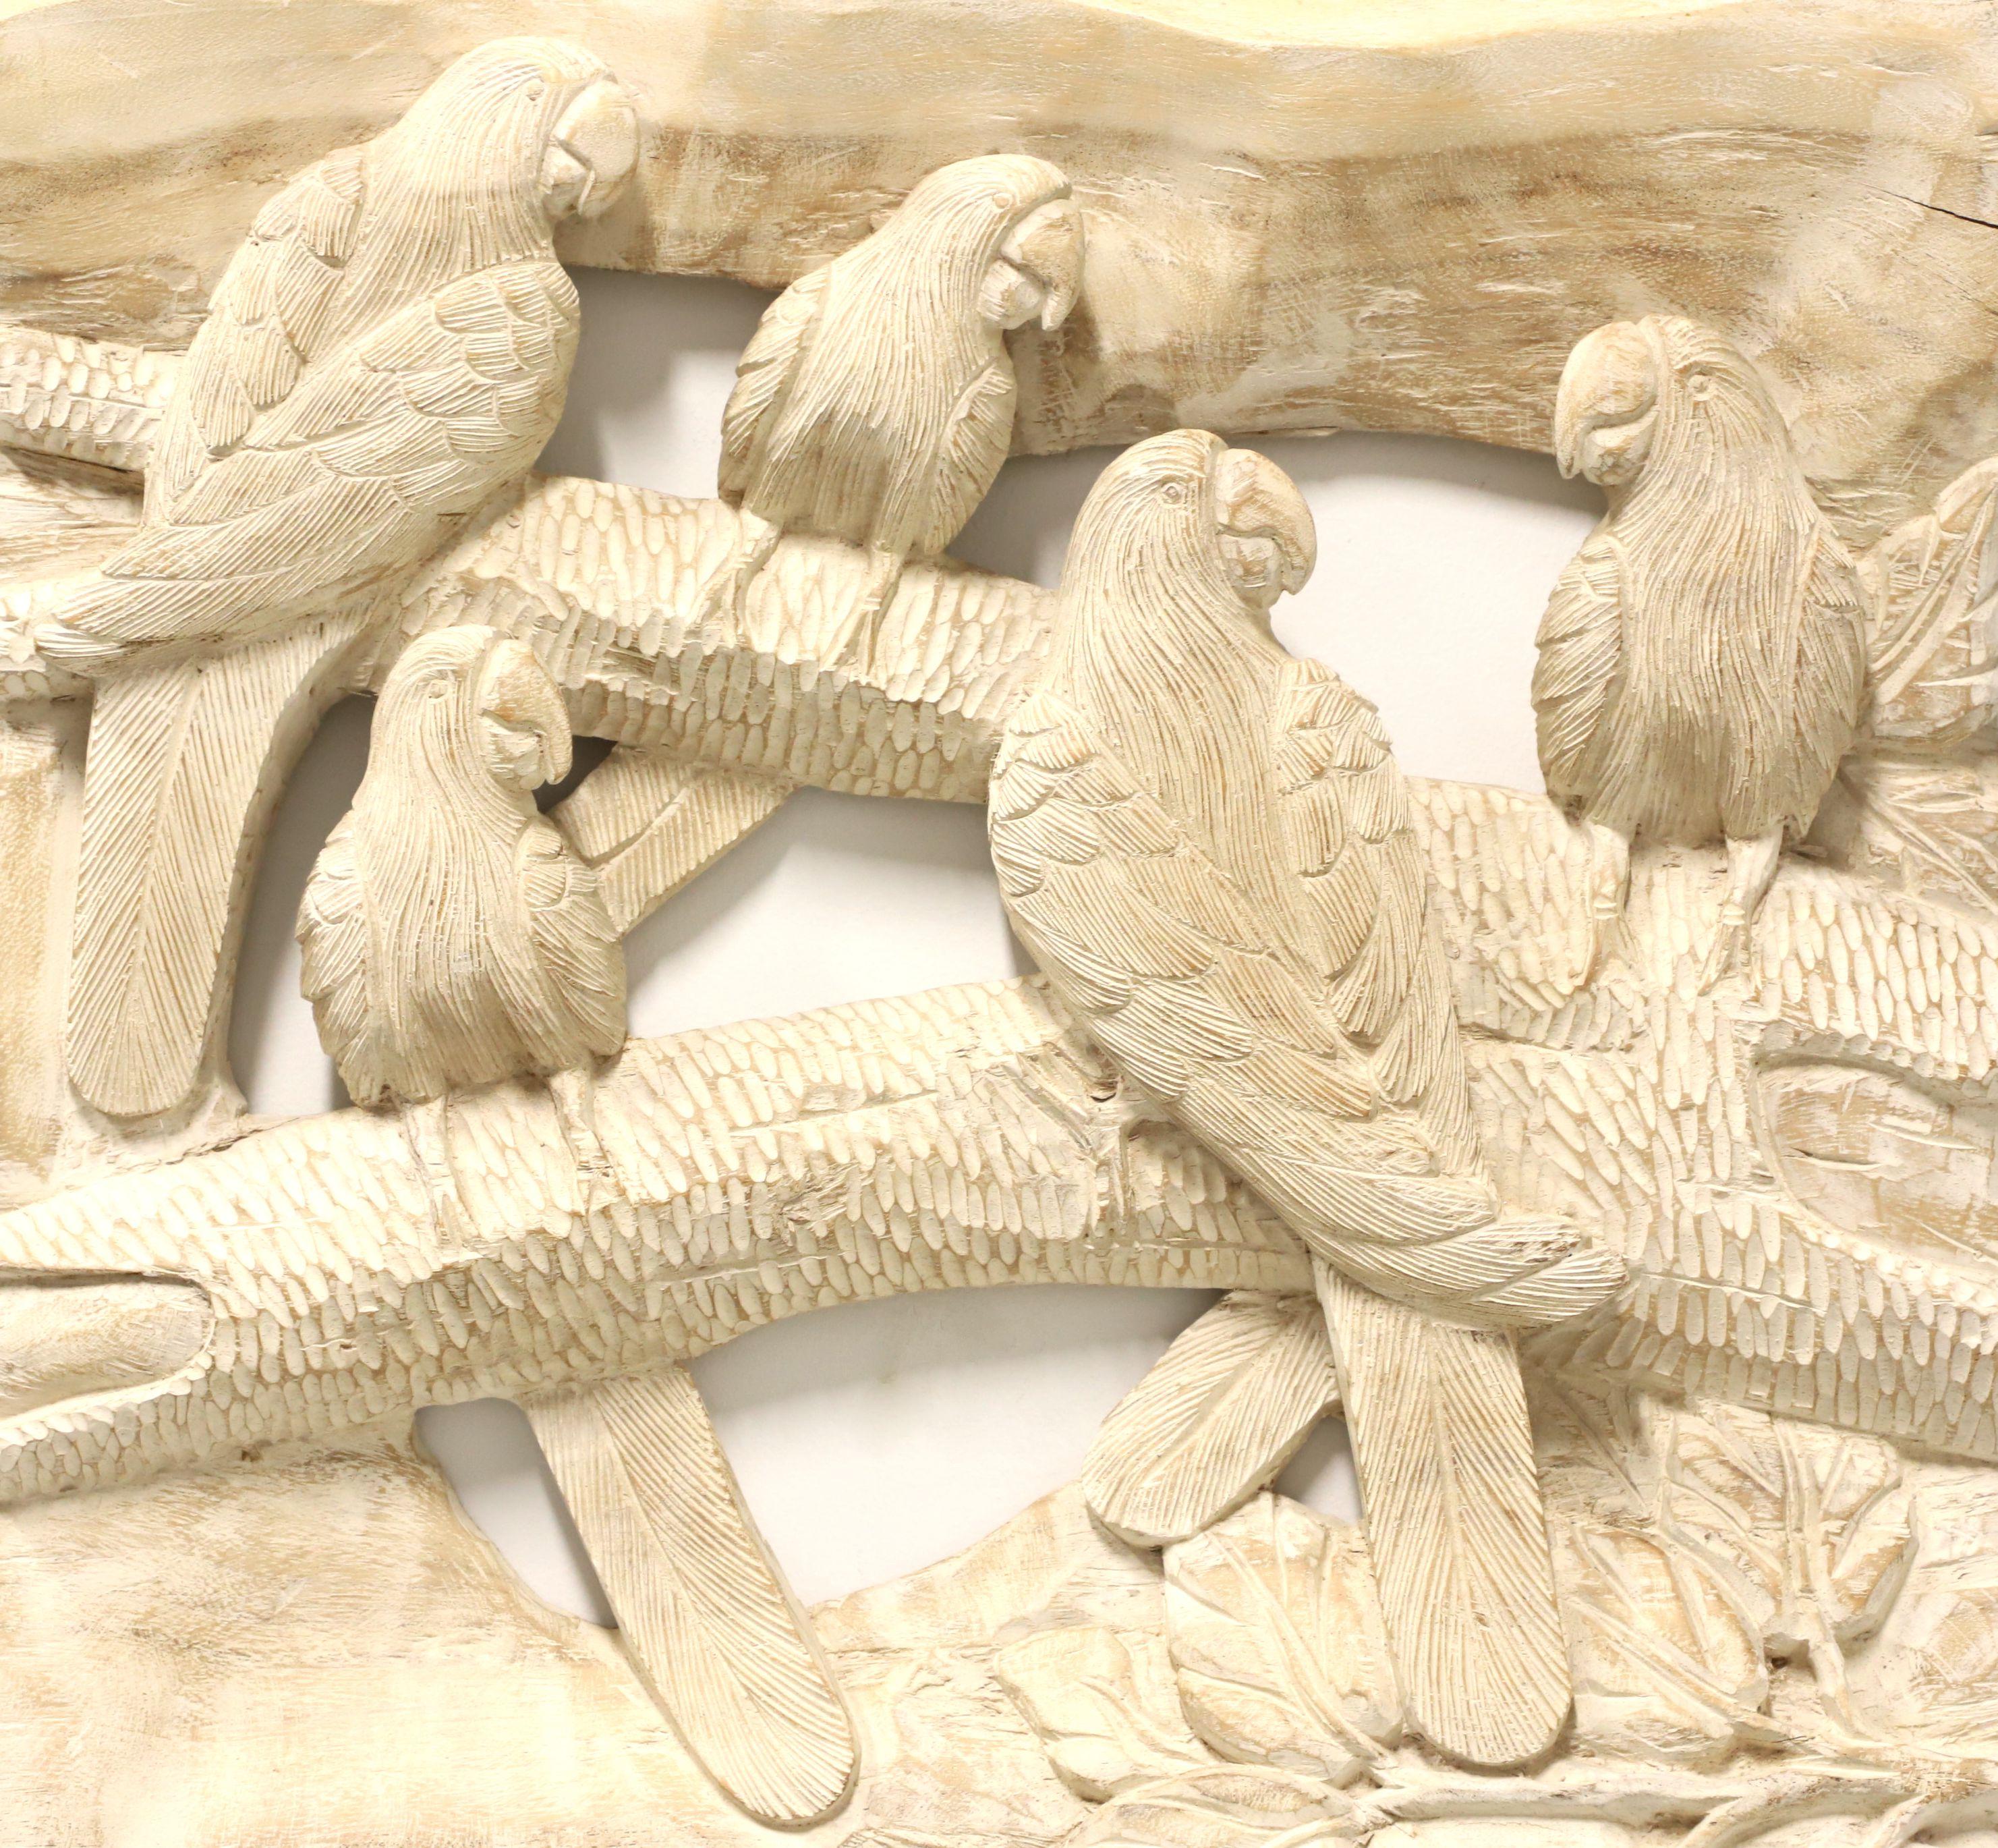 Eine dekorative Vogelschnitzerei aus der Mitte des 20. Jahrhunderts. Ohne Titel, (Papageien in einem Baum). Unsigniert, Künstler unbekannt. Aus einem massiven Stück Holz geschnitzt. An der Rückseite sind Metallbügel zum Aufhängen angebracht.